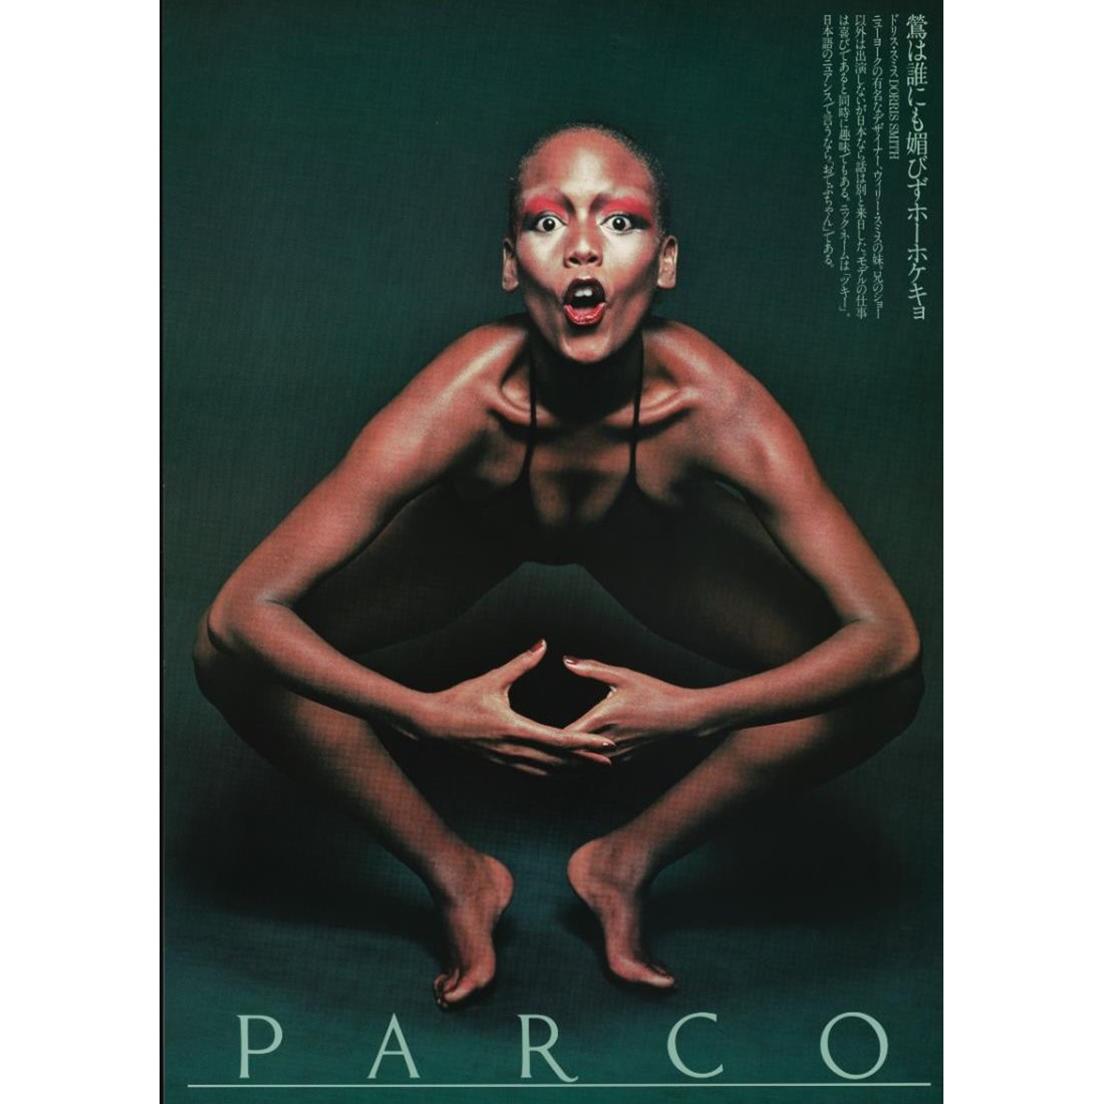 《鶯は誰にも媚びずホーホケキョ》PARCOポスター（1976年）。70年代、“ものを宣伝するのではなく、現象（生き方＝思想）を広告宣伝する”ようになった広告。それを代表するパルコのポスターは、広告の領域を超えた強烈なアートとして時代を彩った。creative director, art director, designer_石岡瑛子、designer_成瀬始子・乾京子、photo_横須賀功光、copywriter_長沢岳夫、stylist_三宅一生・中村里香子、makeup_川邊サチコ